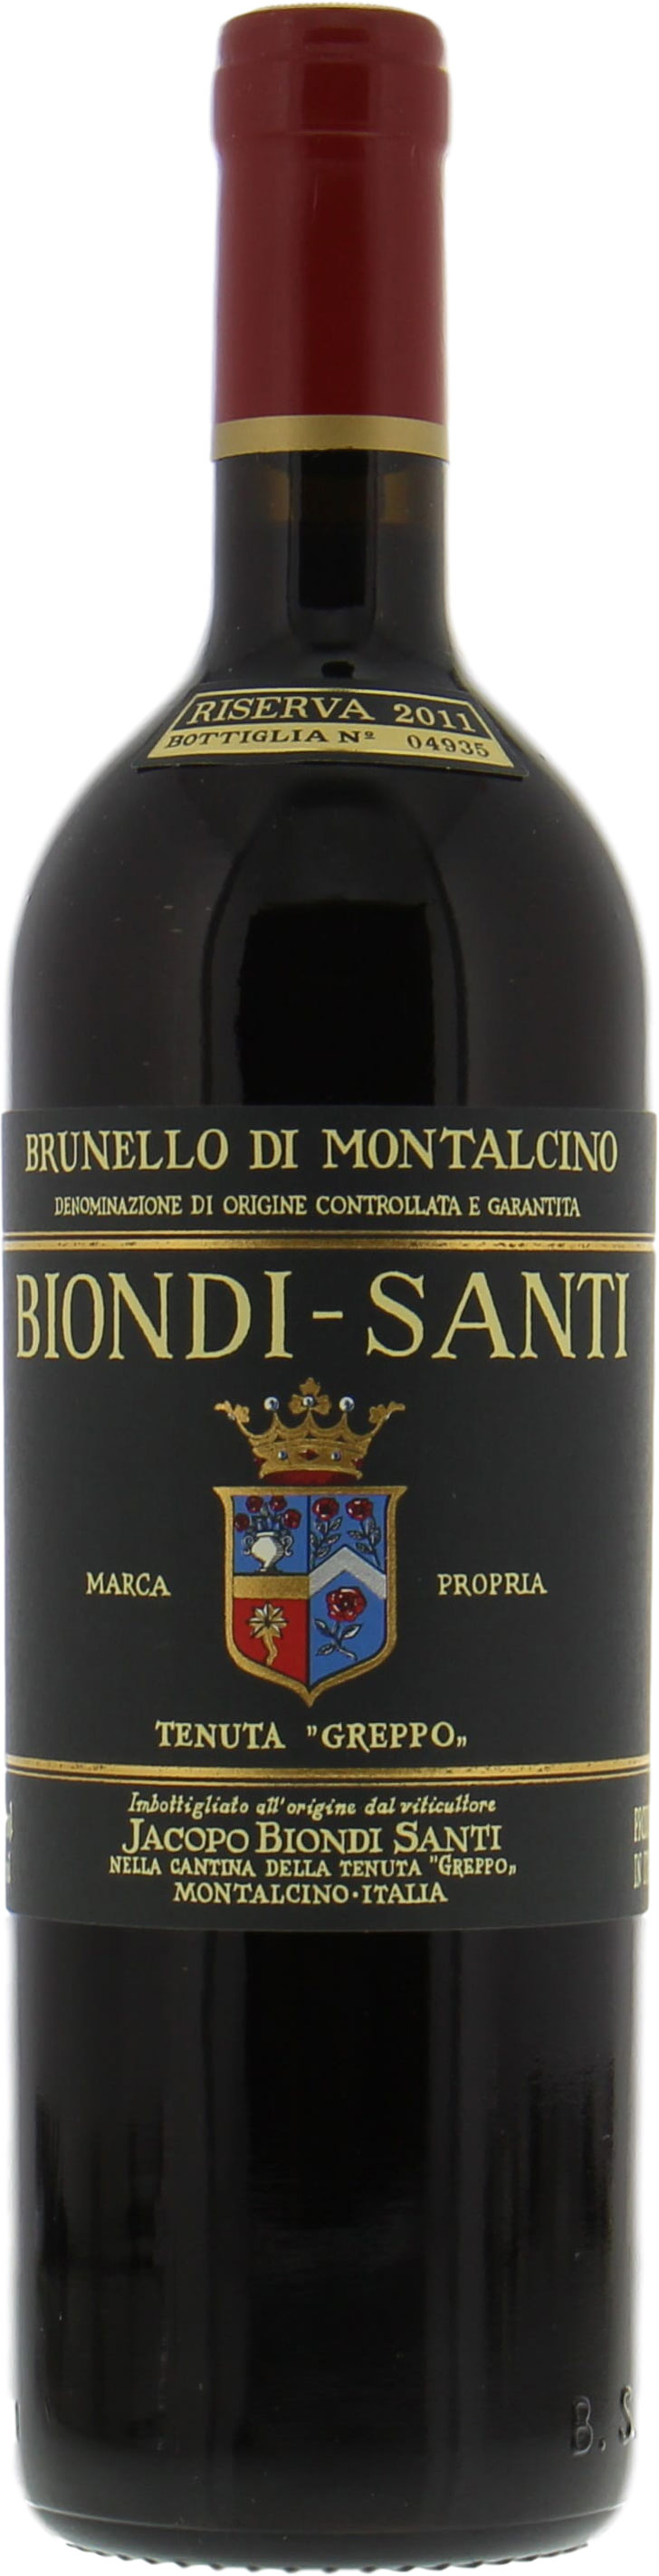 Biondi Santi - Brunello Riserva Greppo 2011 Perfect